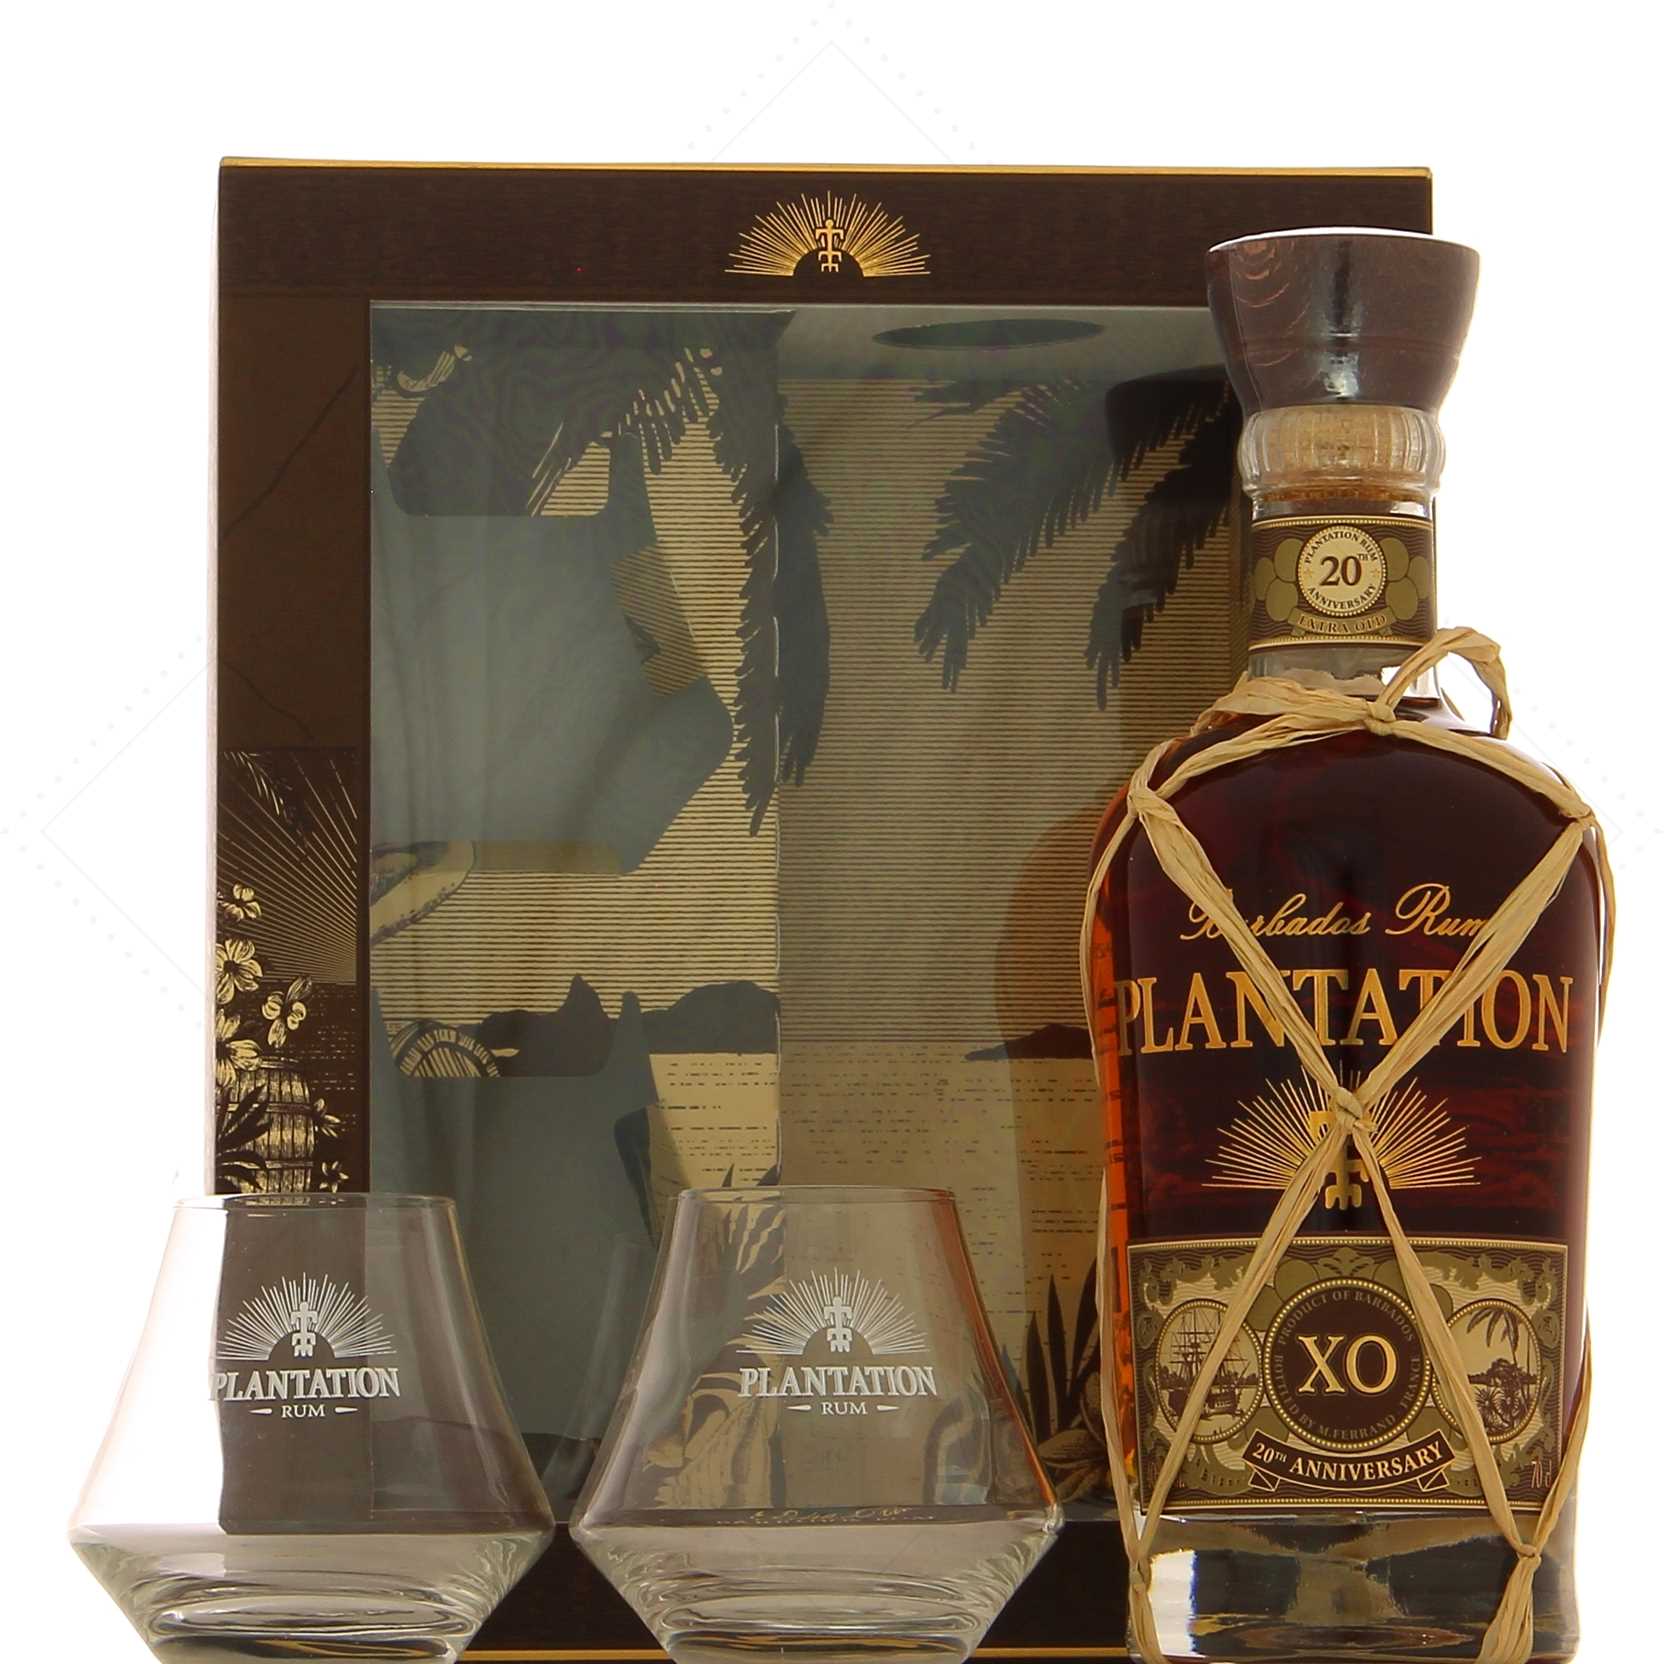 2 20th Attitude 40° Plantation Rhum Rum Boxed set warm Barbados - glasses XO Anniversary